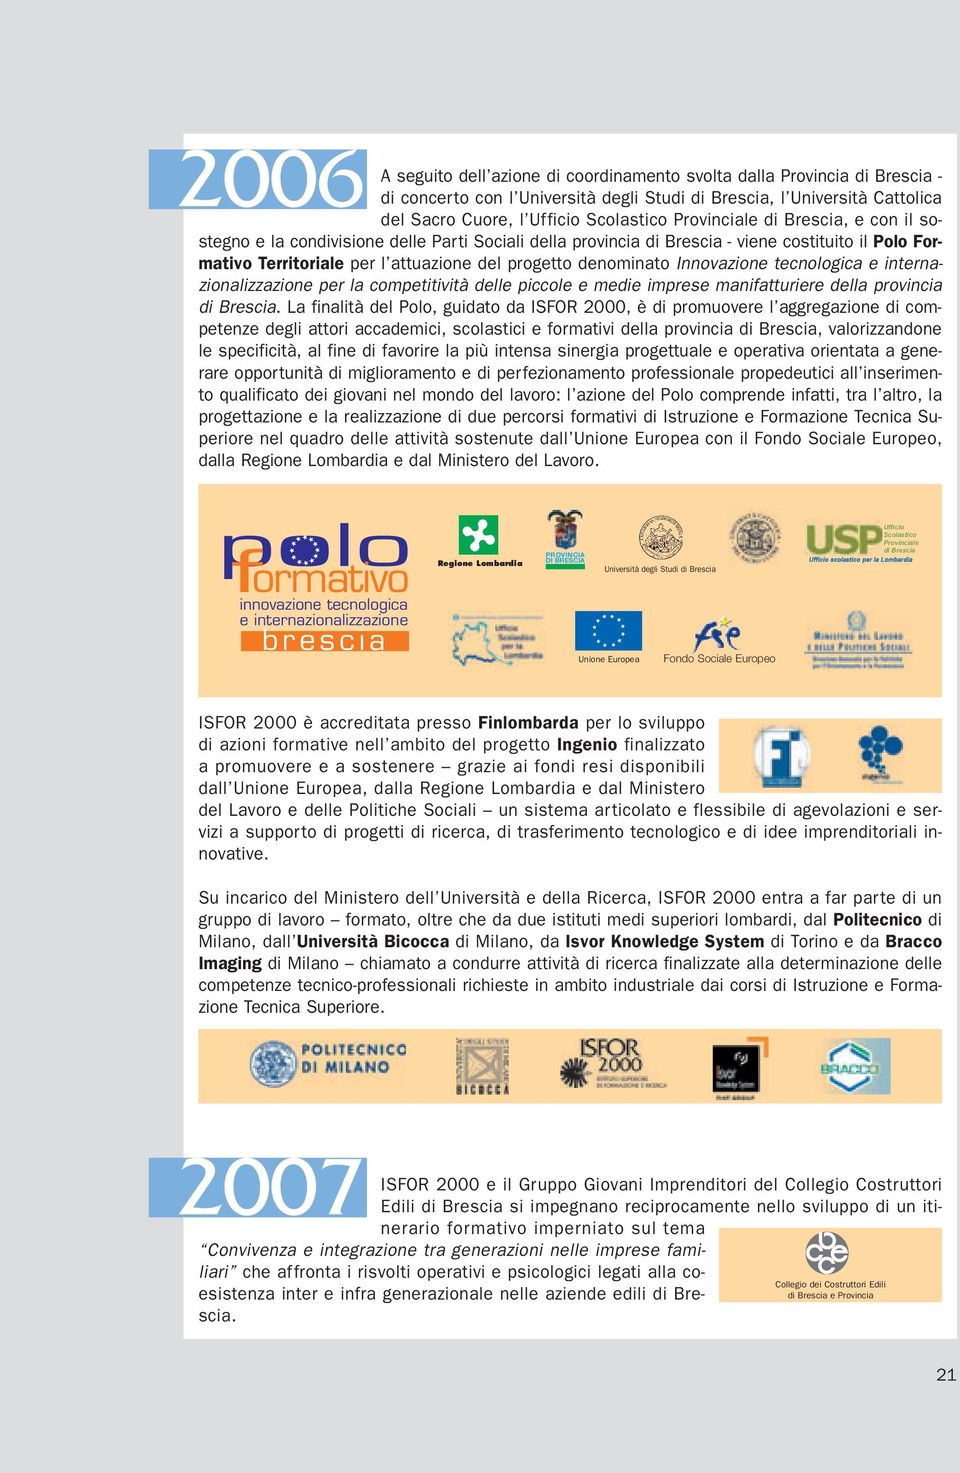 Innovazione tecnologica e internazionalizzazione per la competitività delle piccole e medie imprese manifatturiere della provincia di Brescia.